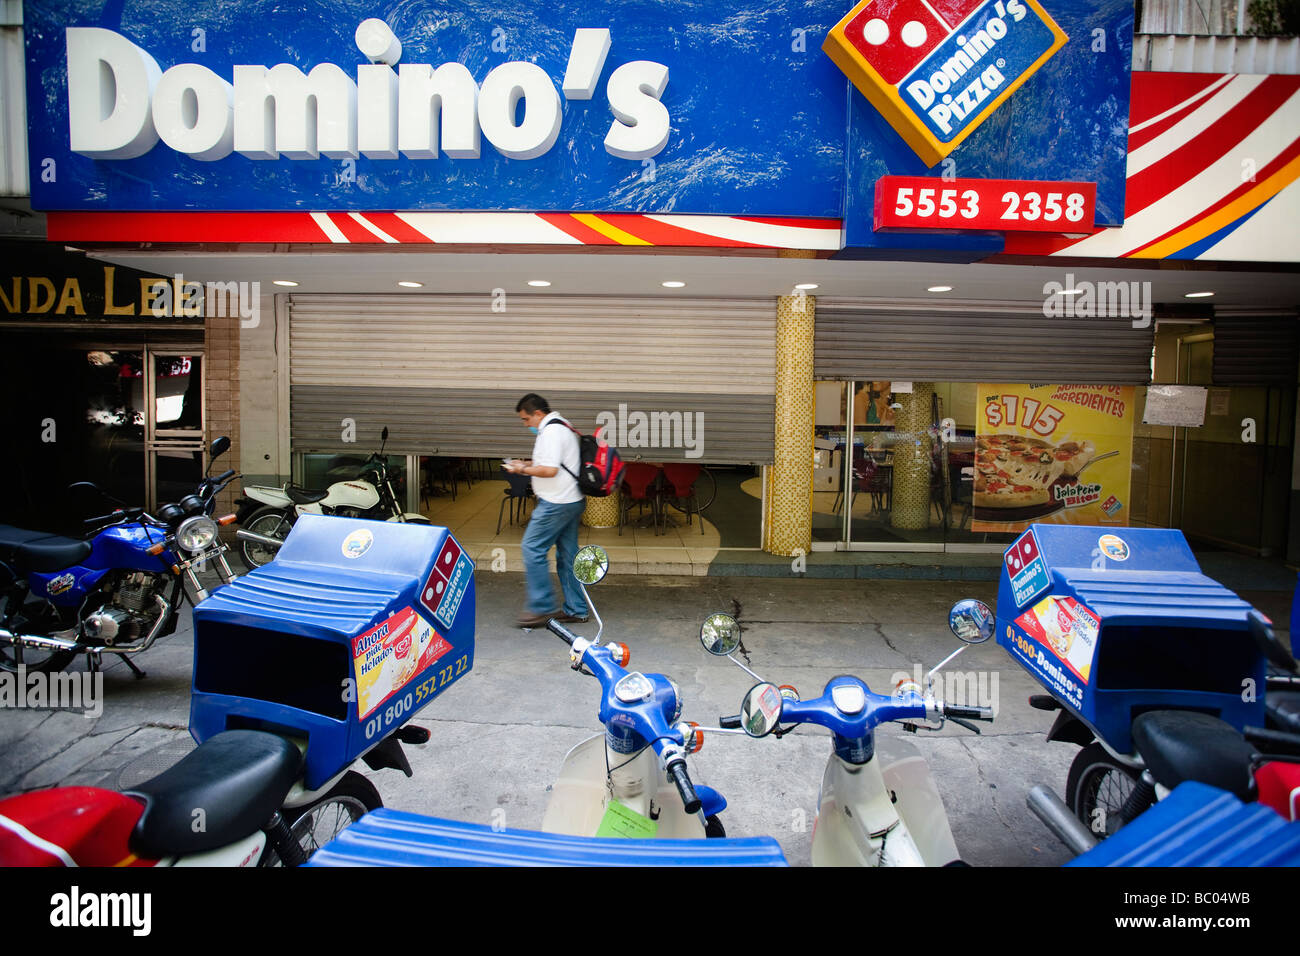 Ein Mann geht auf der Straße zwischen einigen Motorrädern und einer geschlossenen Pizzeria in Mexico City, DF, Mexiko geparkt. Stockfoto